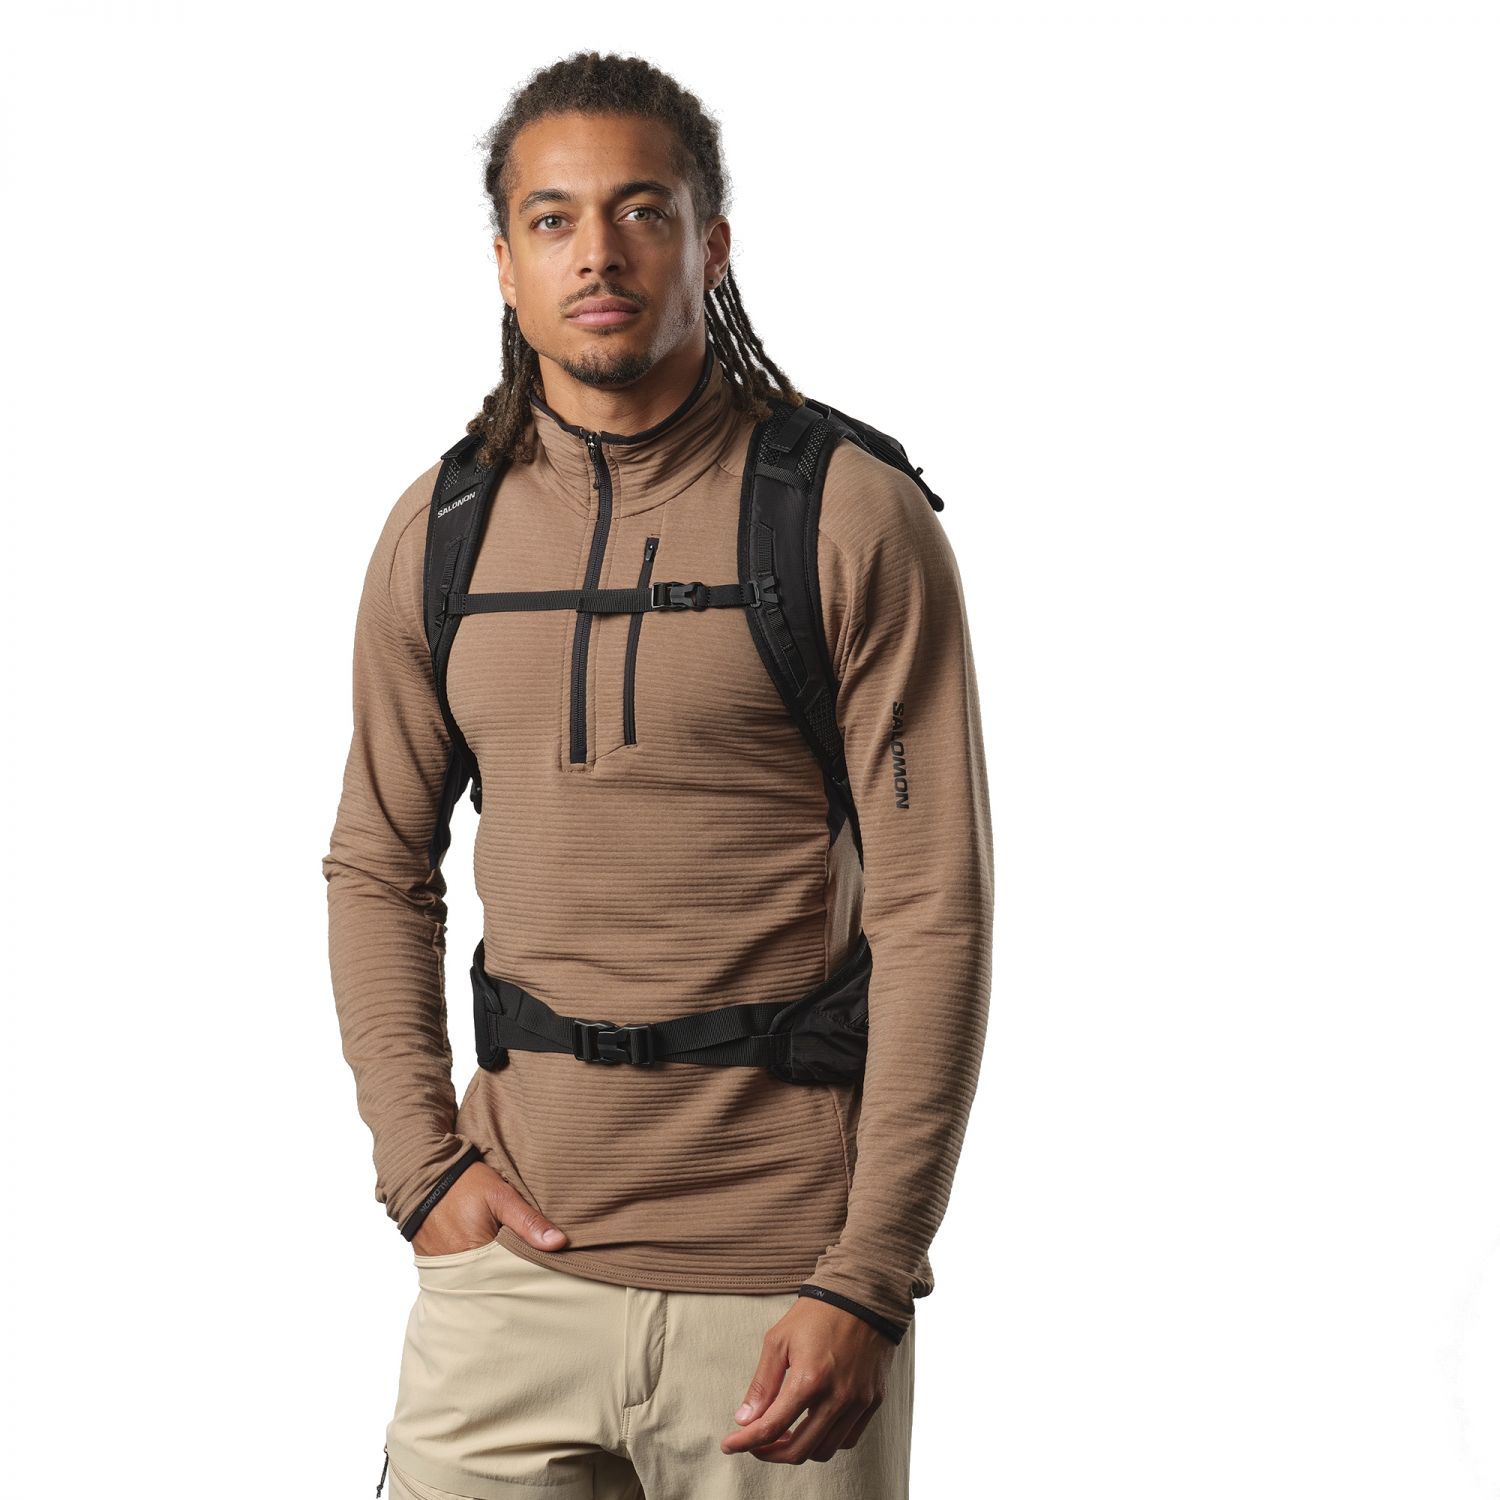 Salomon Trailblazer 30, backpack, black/alloy